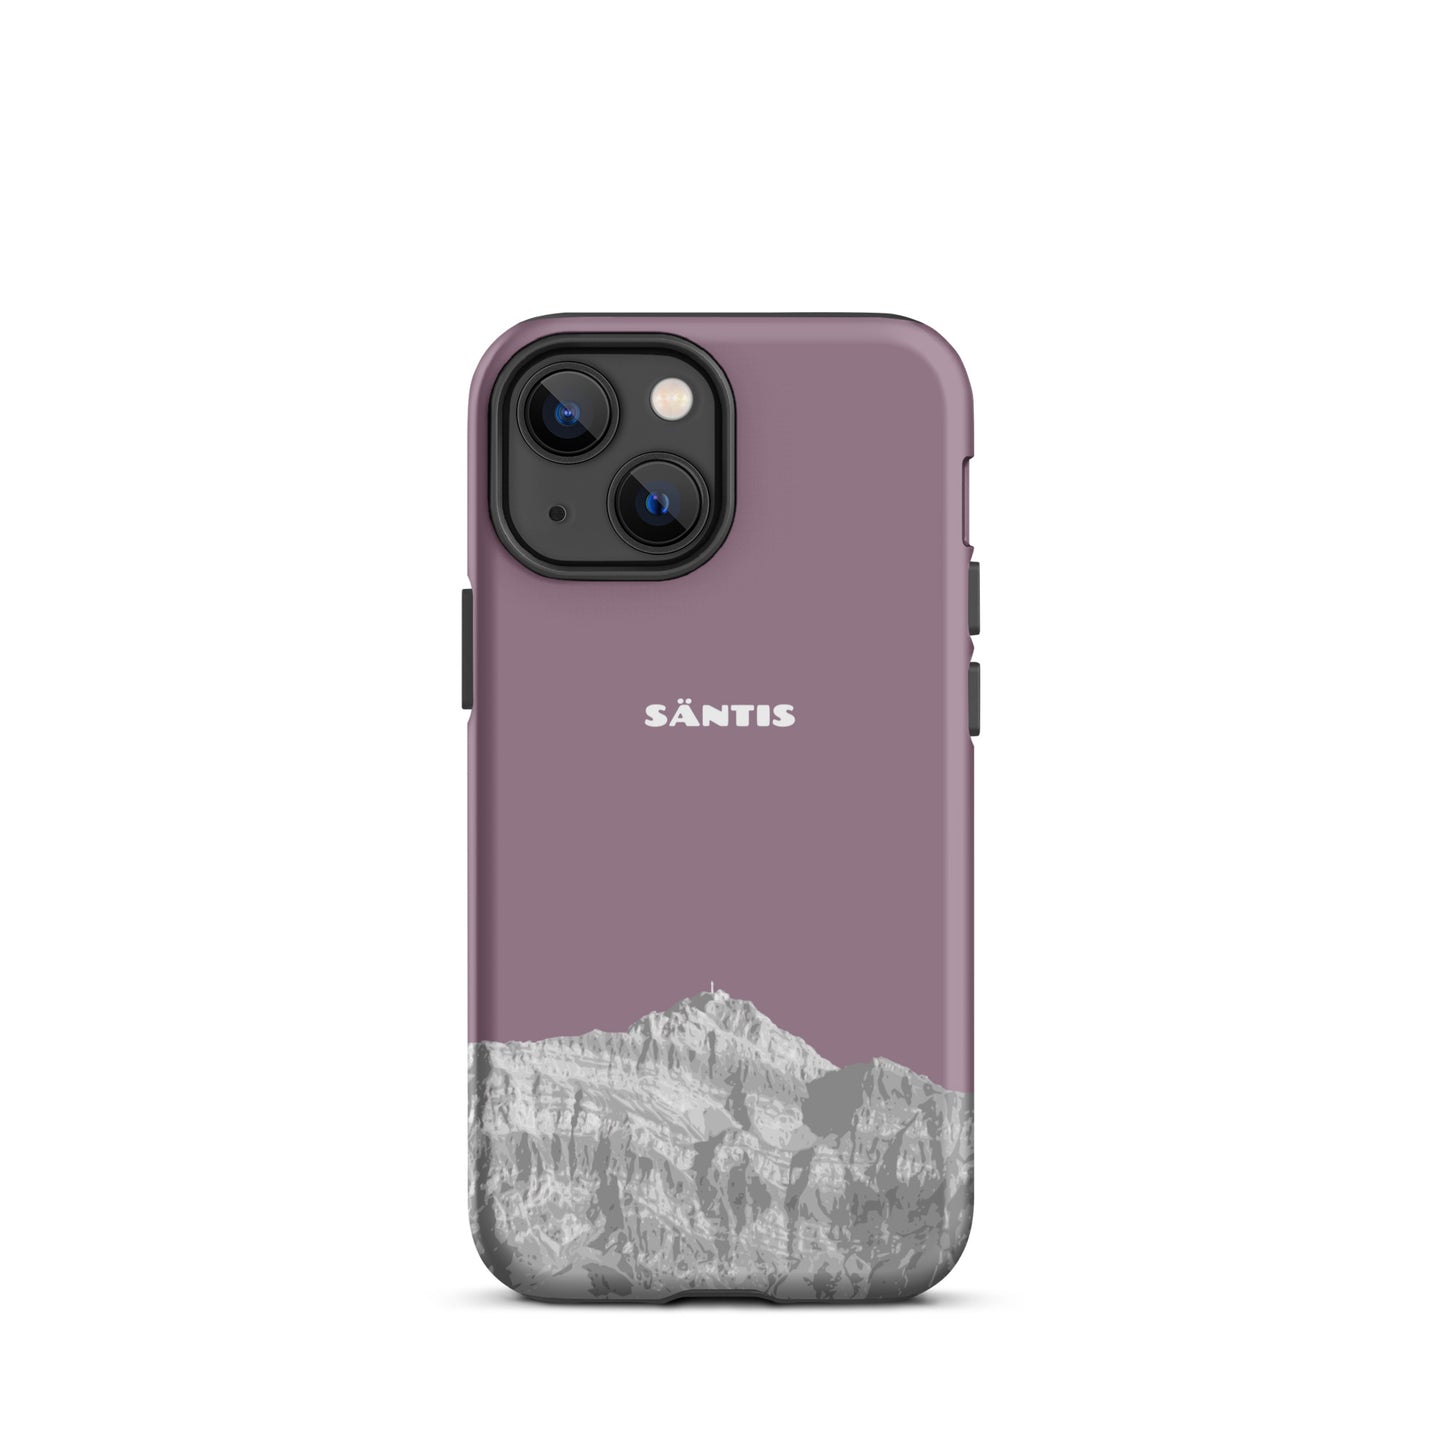 Hülle für das iPhone 13 Mini von Apple in der Farbe Pastellviolett, dass den Säntis im Alpstein zeigt.